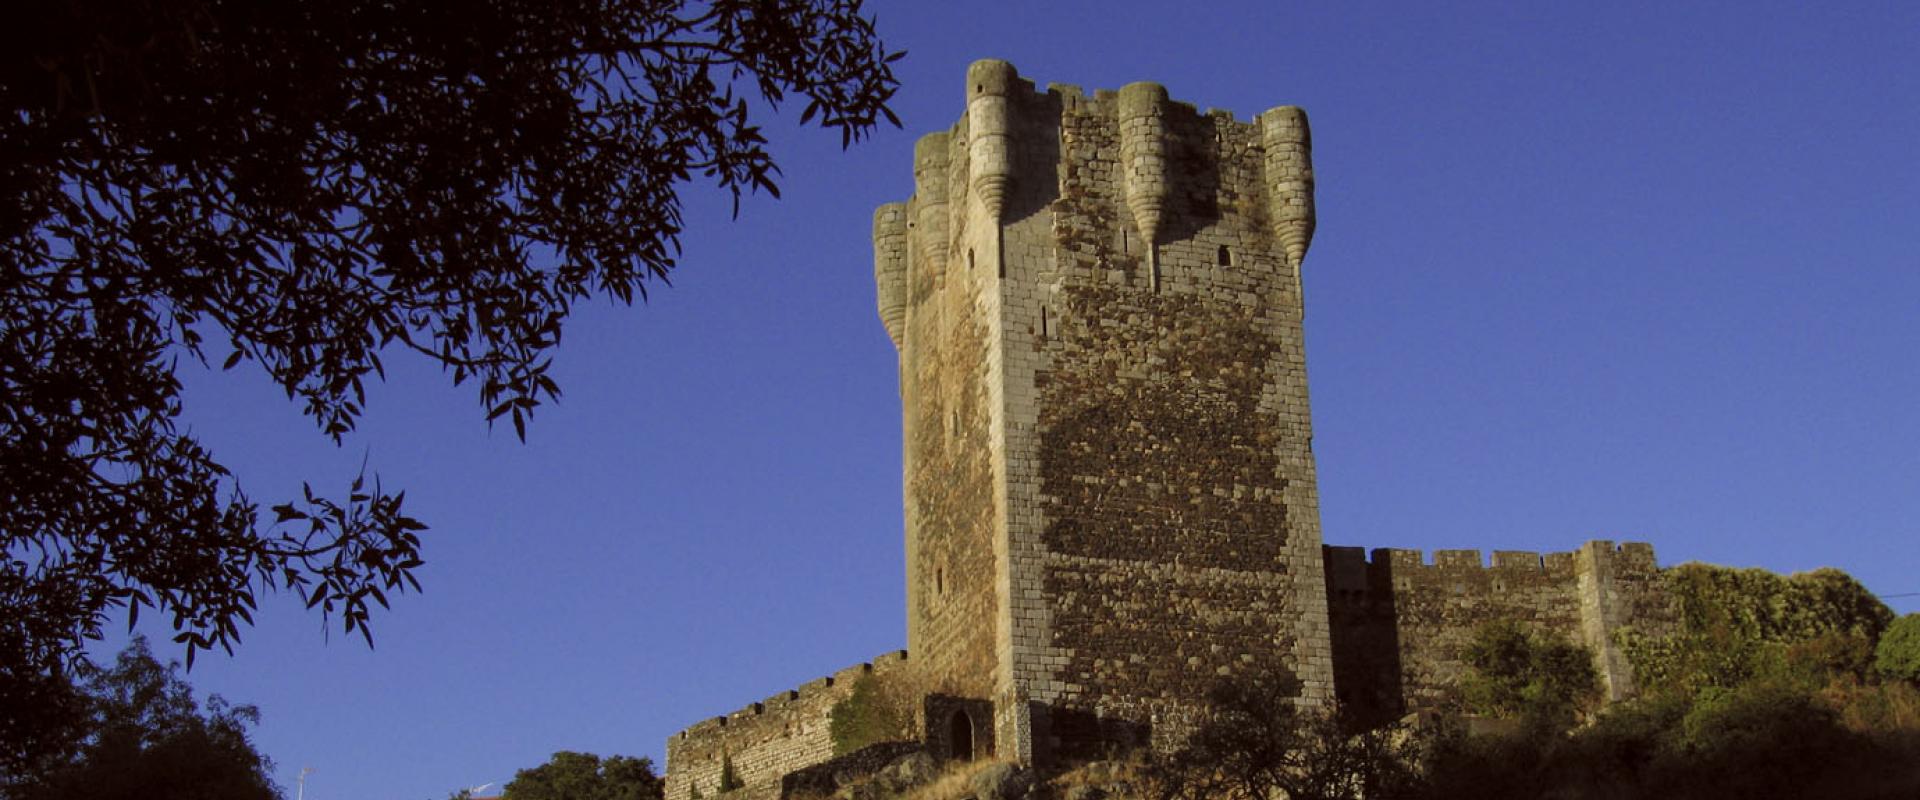 Monleón Castle